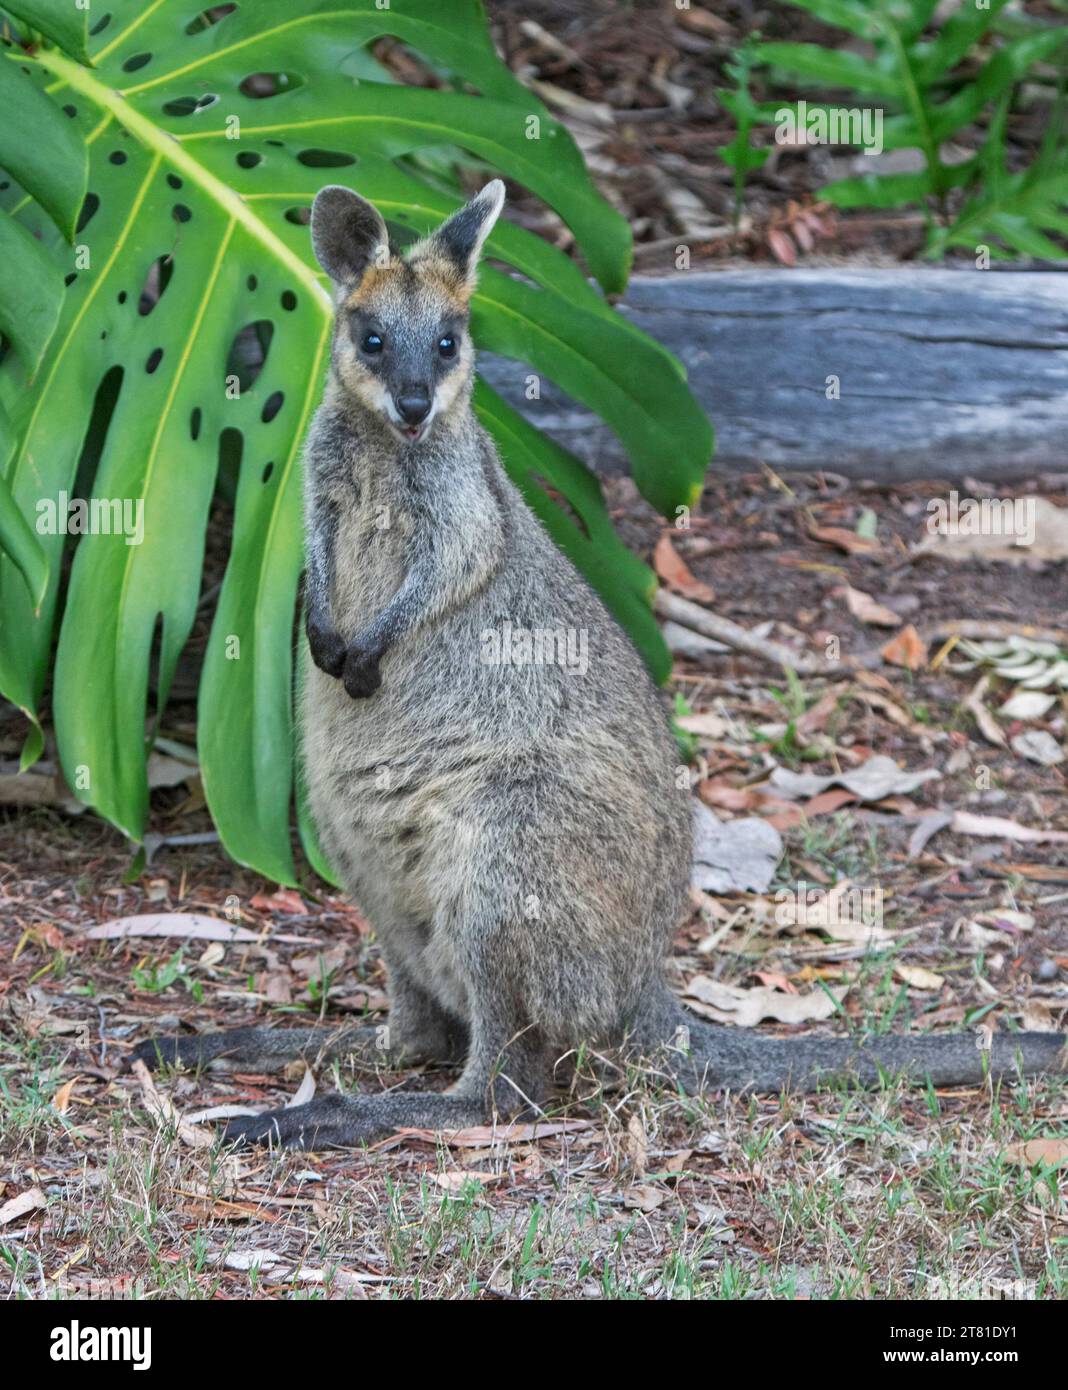 Wallaby paludoso, Wallabia bicolor, un selvaggio marsupiale australiano in un giardino rurale, che guarda direttamente alla macchina fotografica, Foto Stock